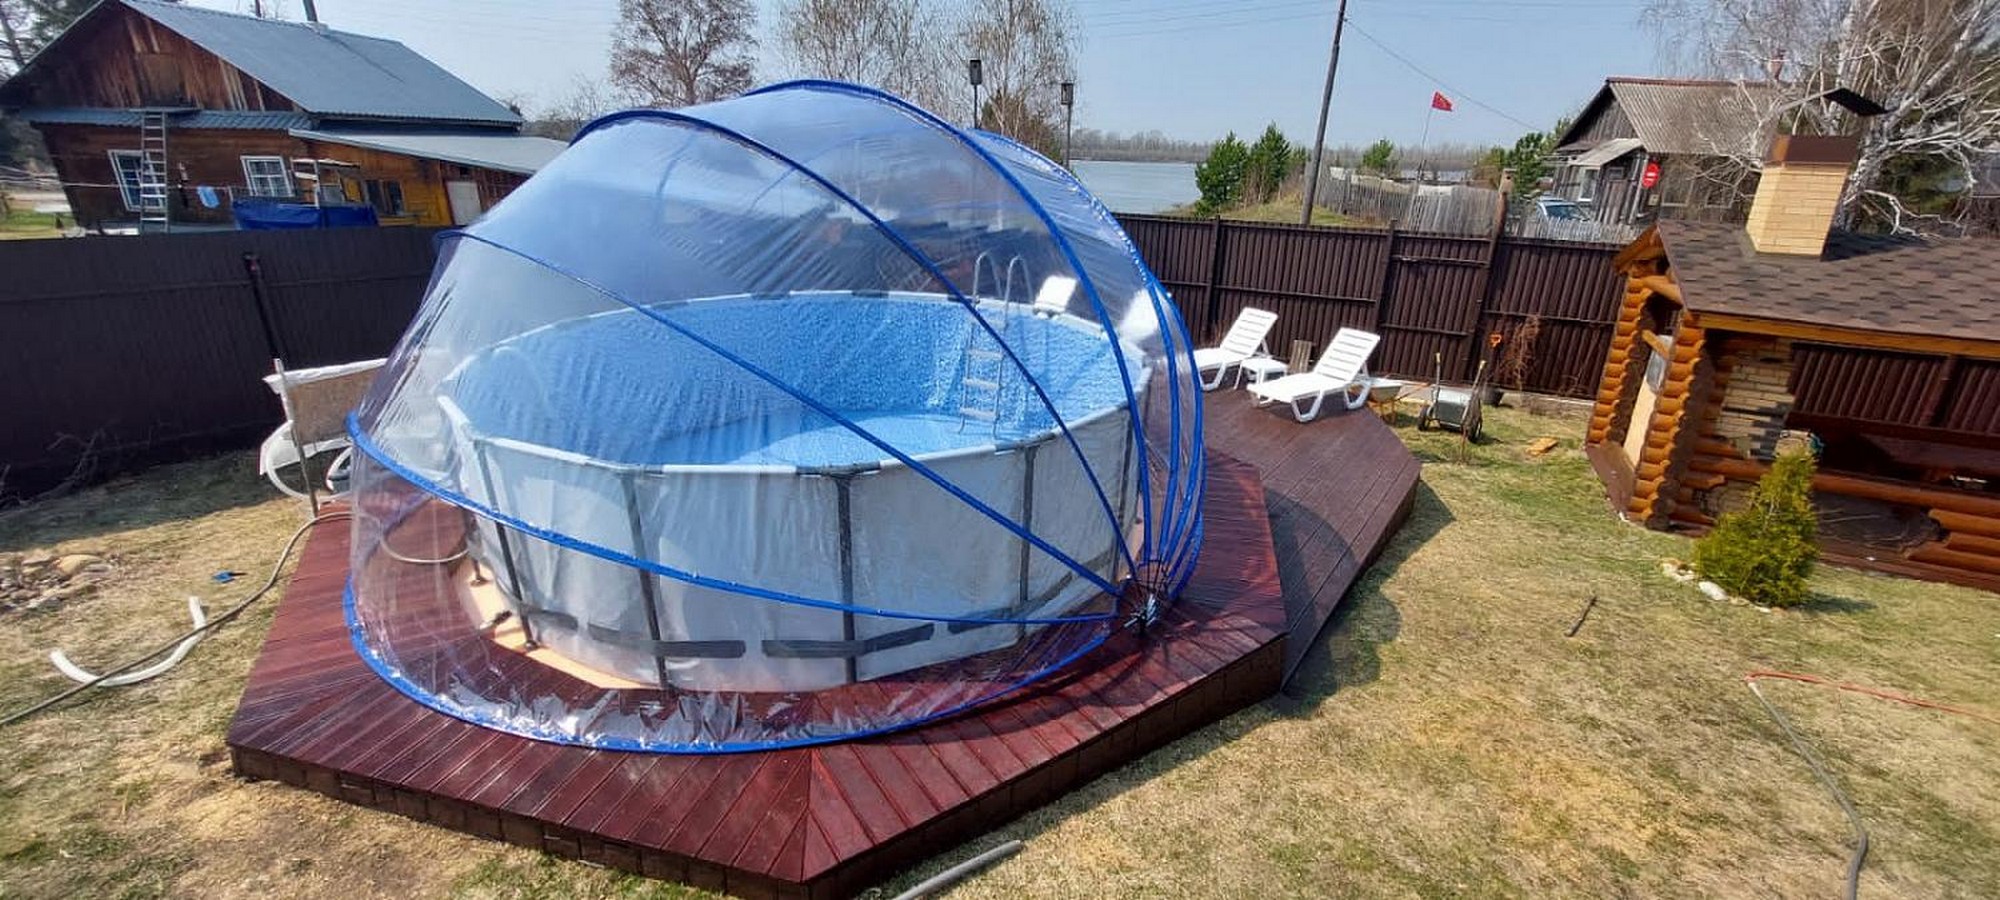 Круглый купольный тент павильон d550см Pool Tent для бассейнов и СПА PT550-G серый 2000_900